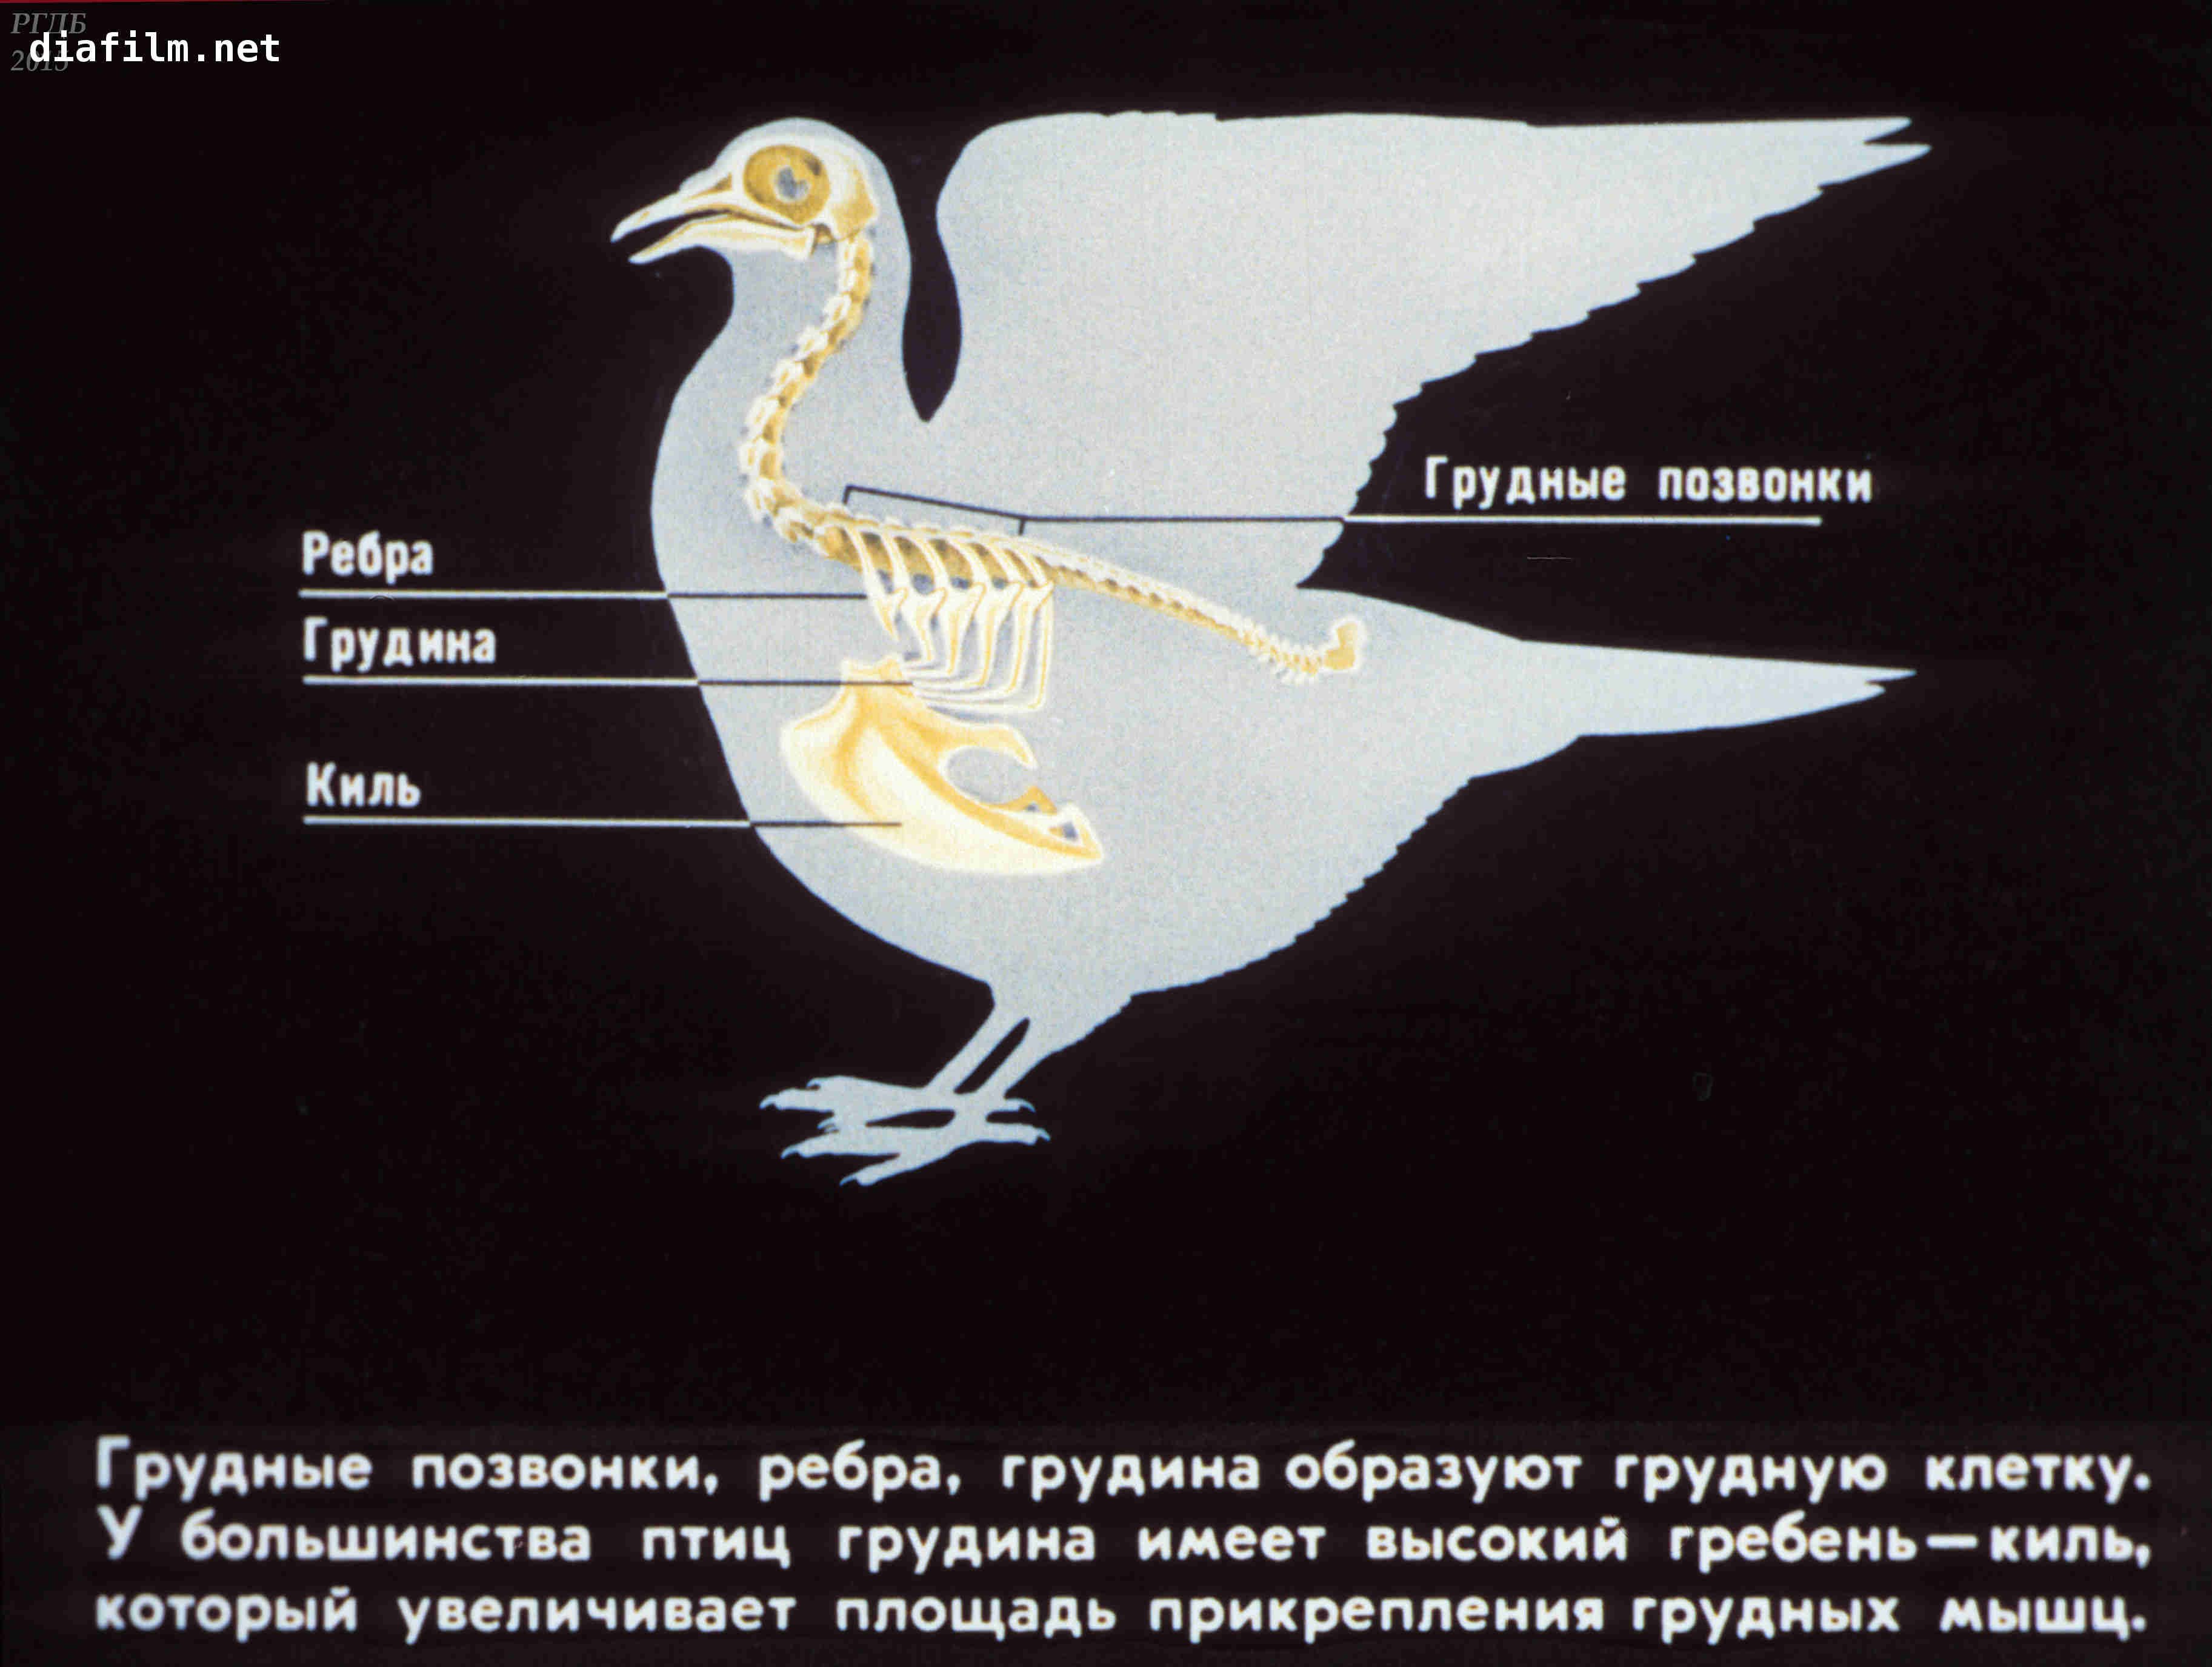 Для чего служит киль у птиц. Киль у птиц. Птица анатомия киль. Грудной киль у птиц. Функции киля у птиц.